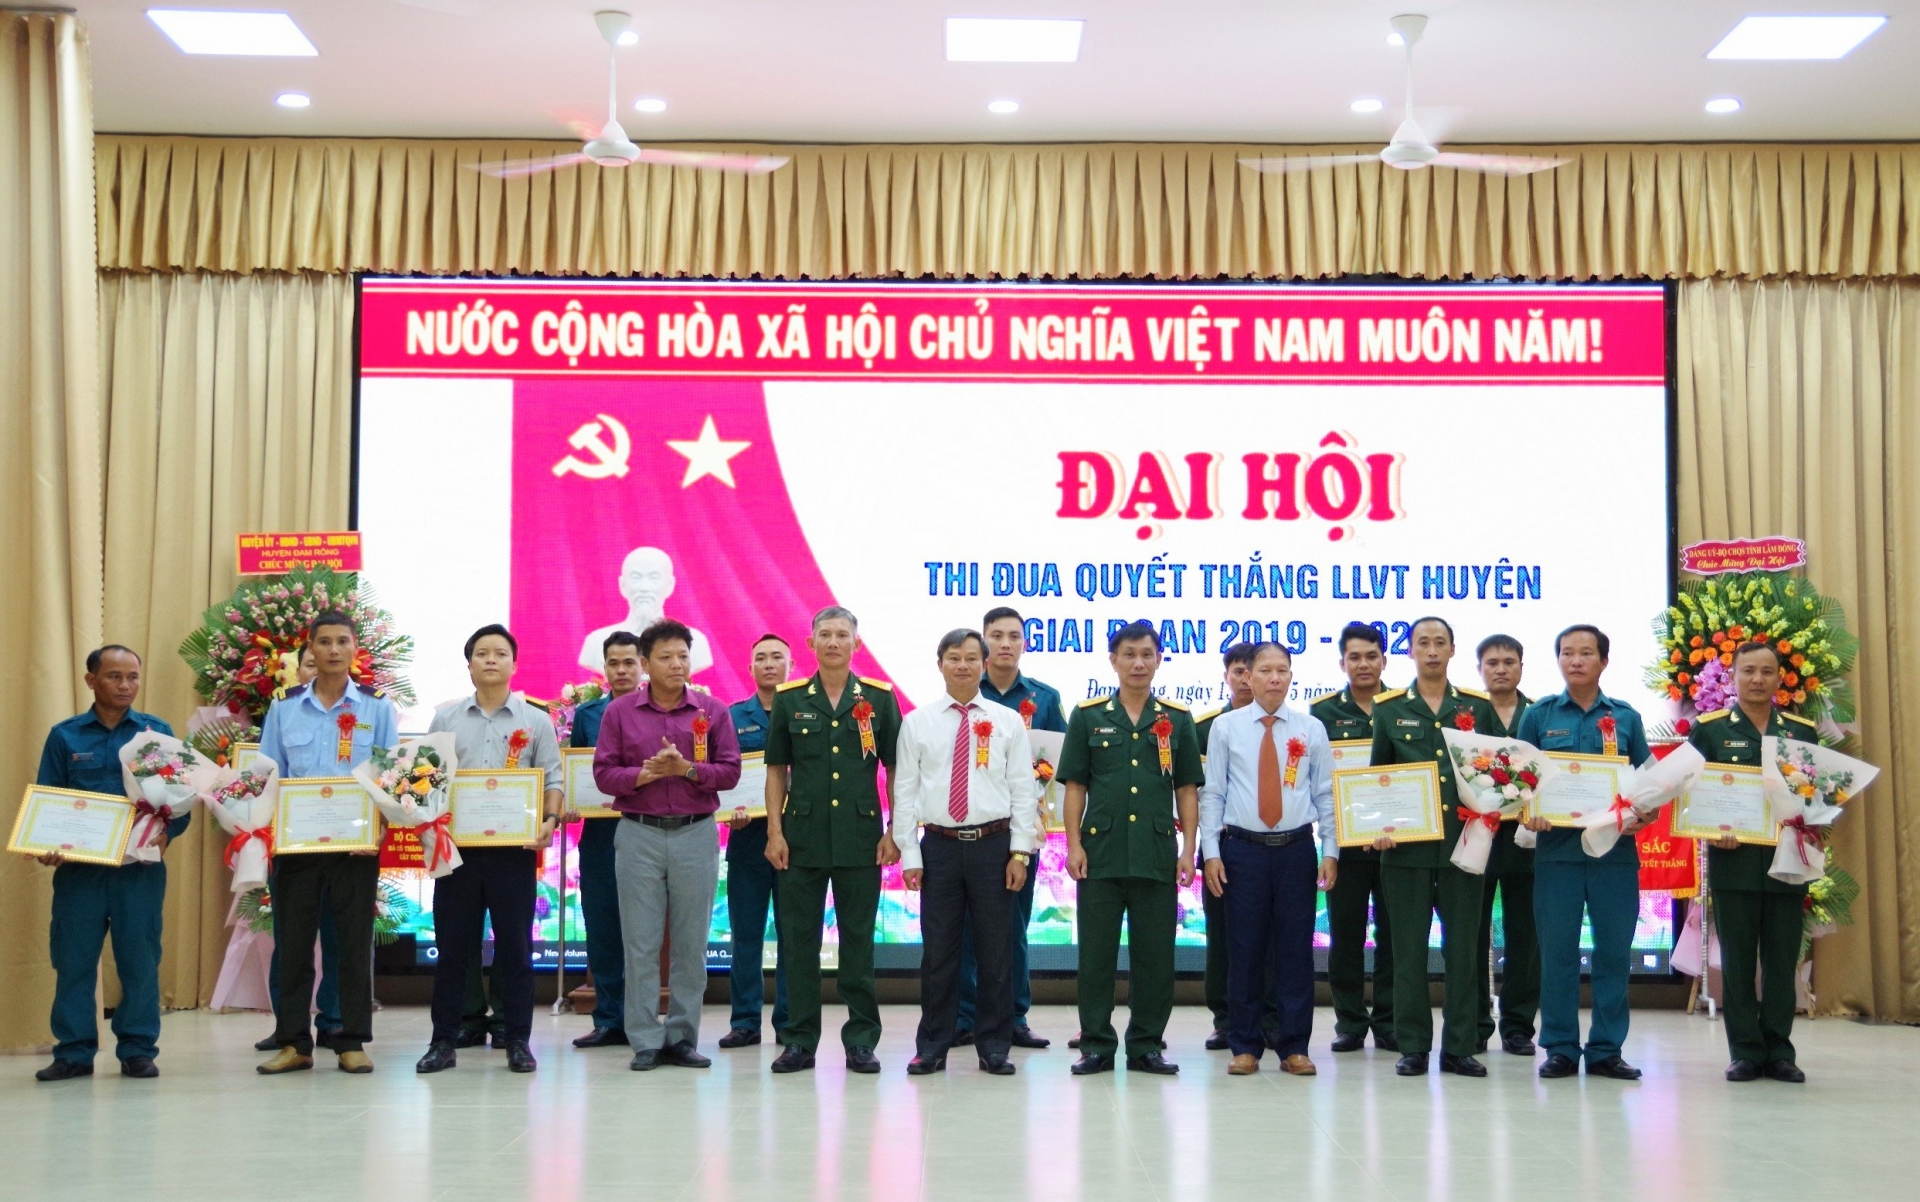 LLVT huyện Đam Rông tổ chức thành công Đại hội Thi đua Quyết thắng nnhiệm kỳ 2019 - 2024